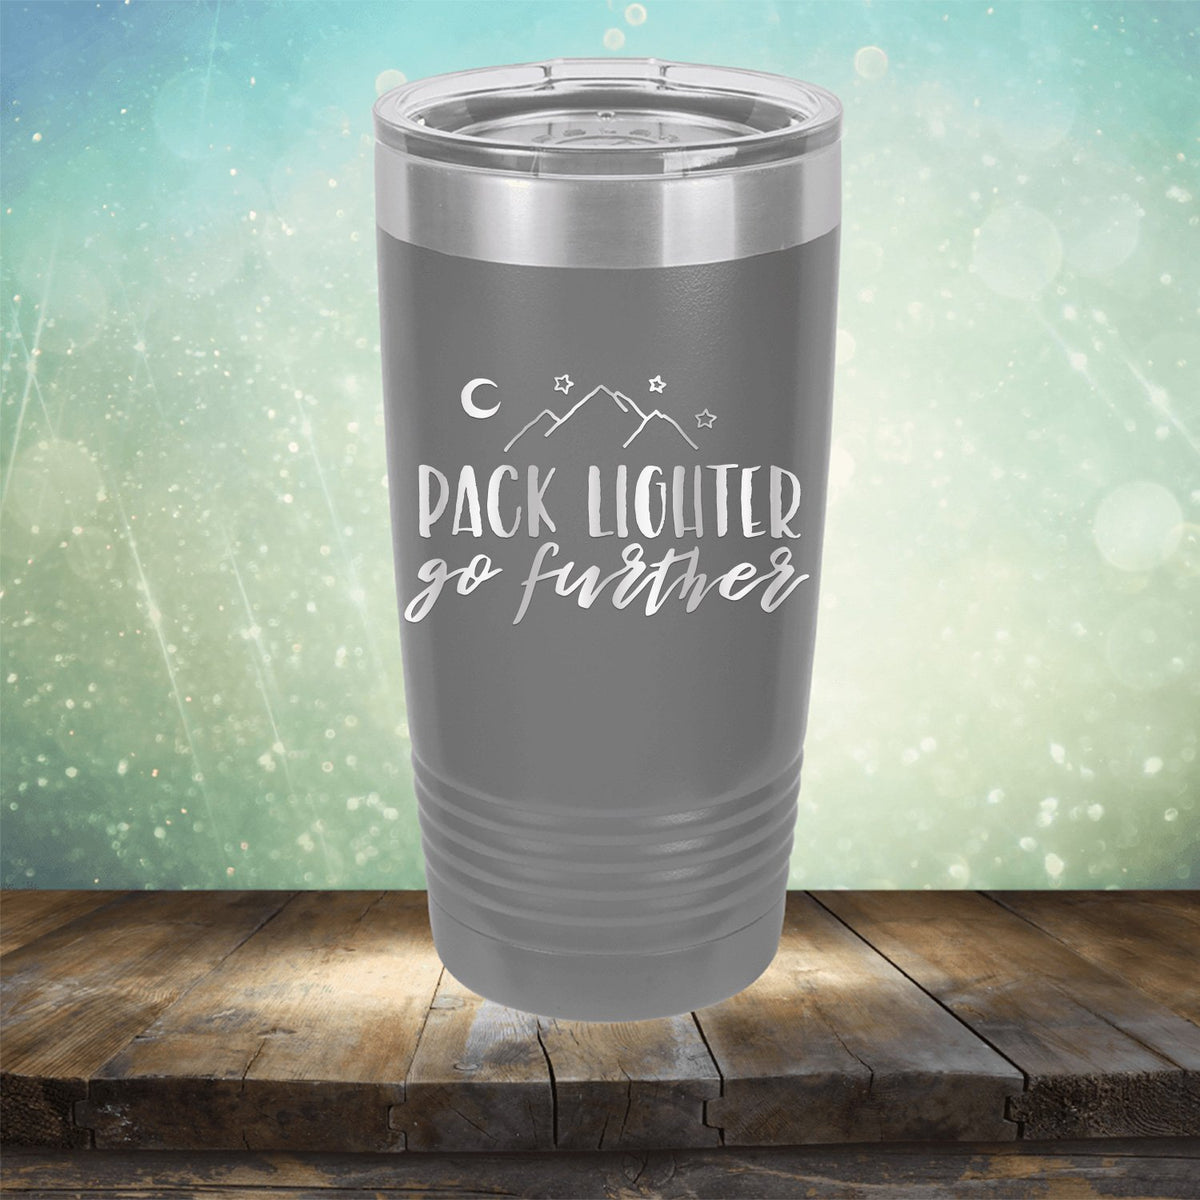 Pack Lighter Go Further - Laser Etched Tumbler Mug